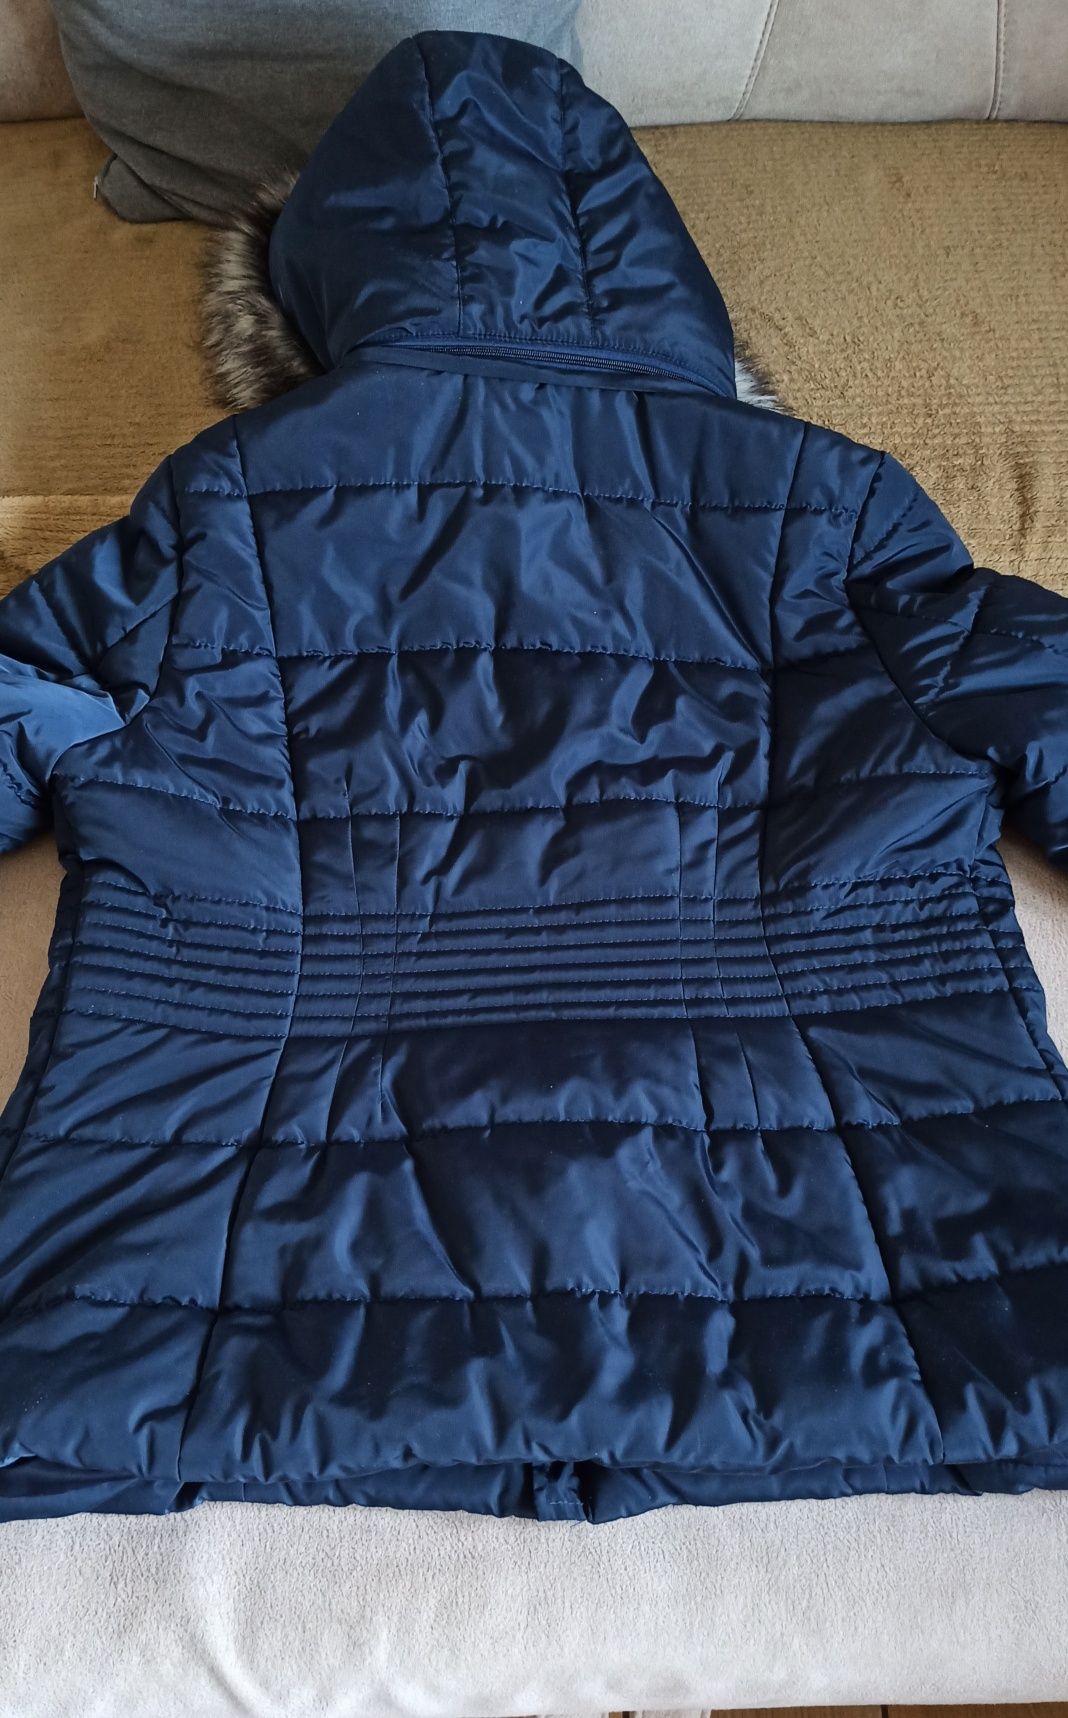 Damska kurtka zimowa w idealnym stanie- rozmiar L